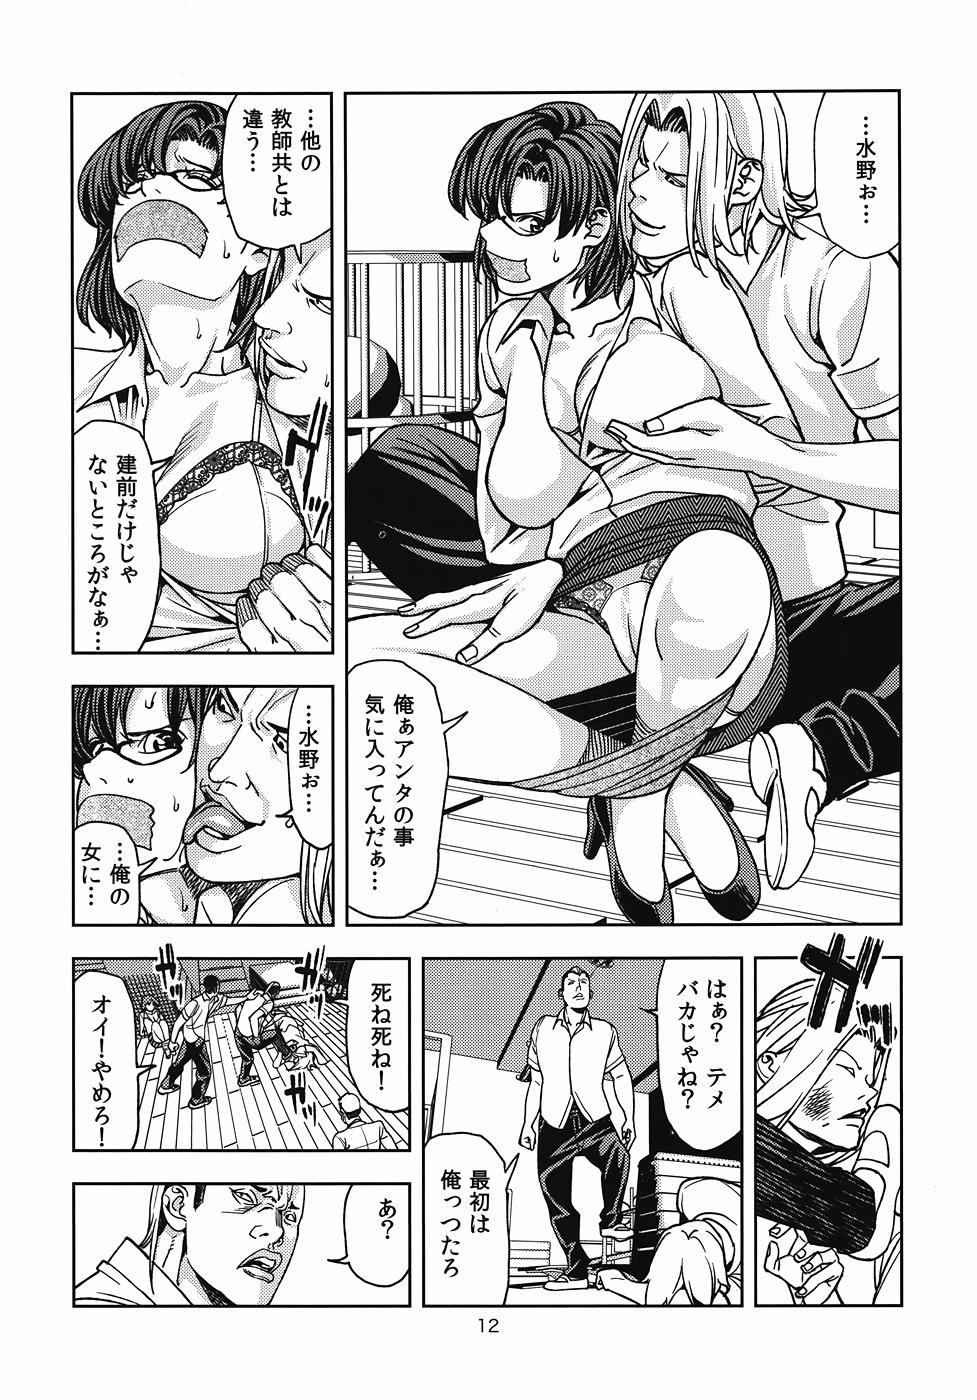 Cavala Mizuno Ami - Sailor moon Ex Girlfriend - Page 11